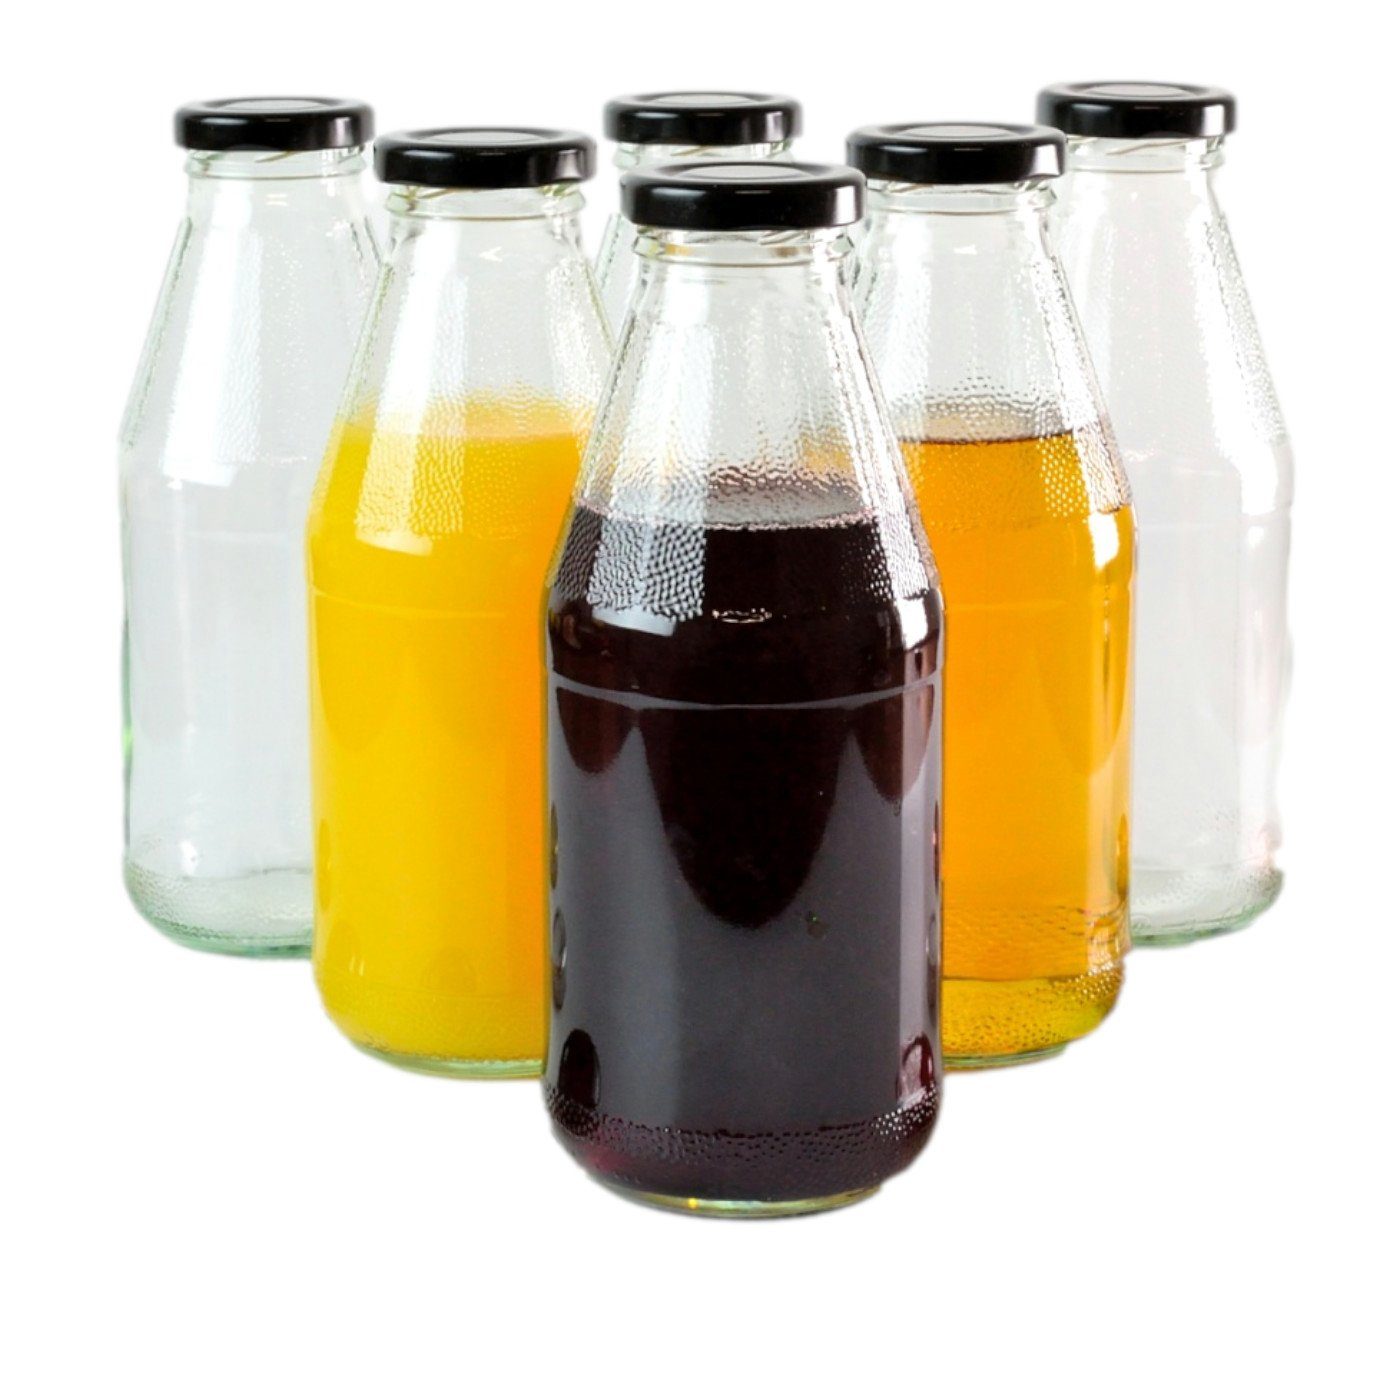 gouveo Trinkflasche Saftflaschen 500 ml mit Schraub-Deckel - Kleine Flasche 0,5 l, 6er Set, schwarz | Trinkflaschen